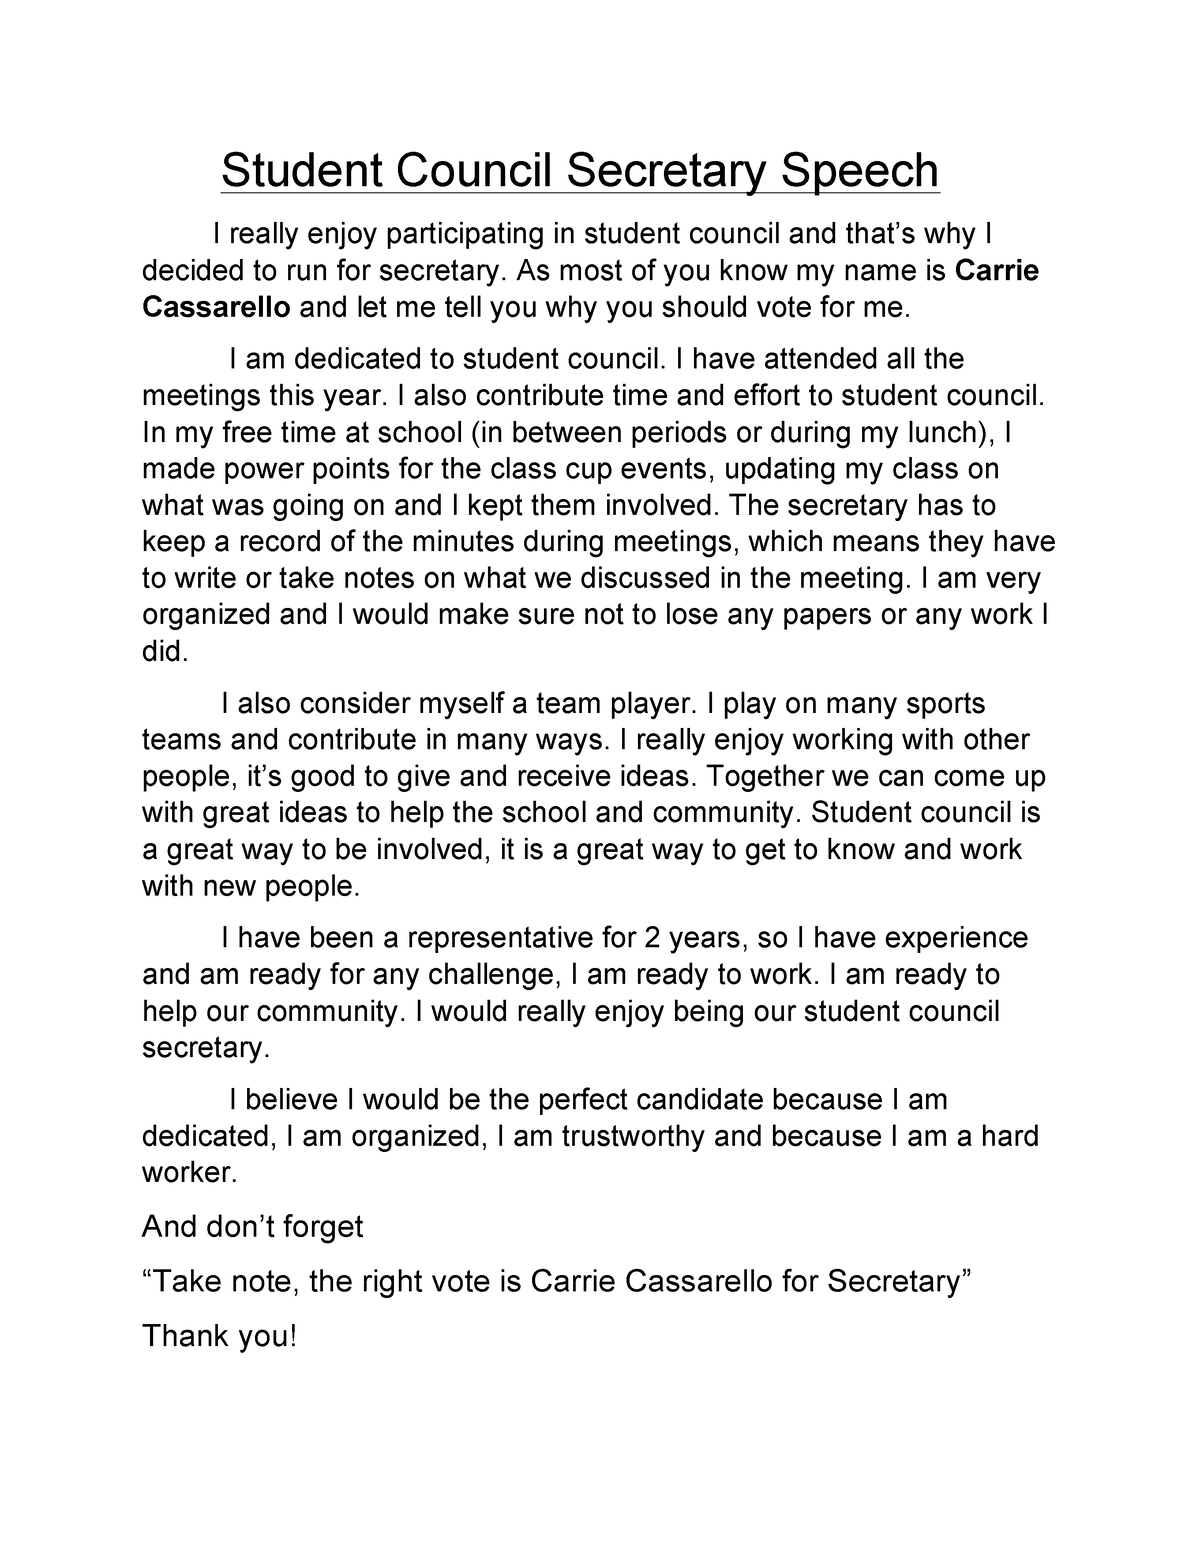 Student Council Secretary Speech - Carrie.C 2 Carrie Cassarello ...